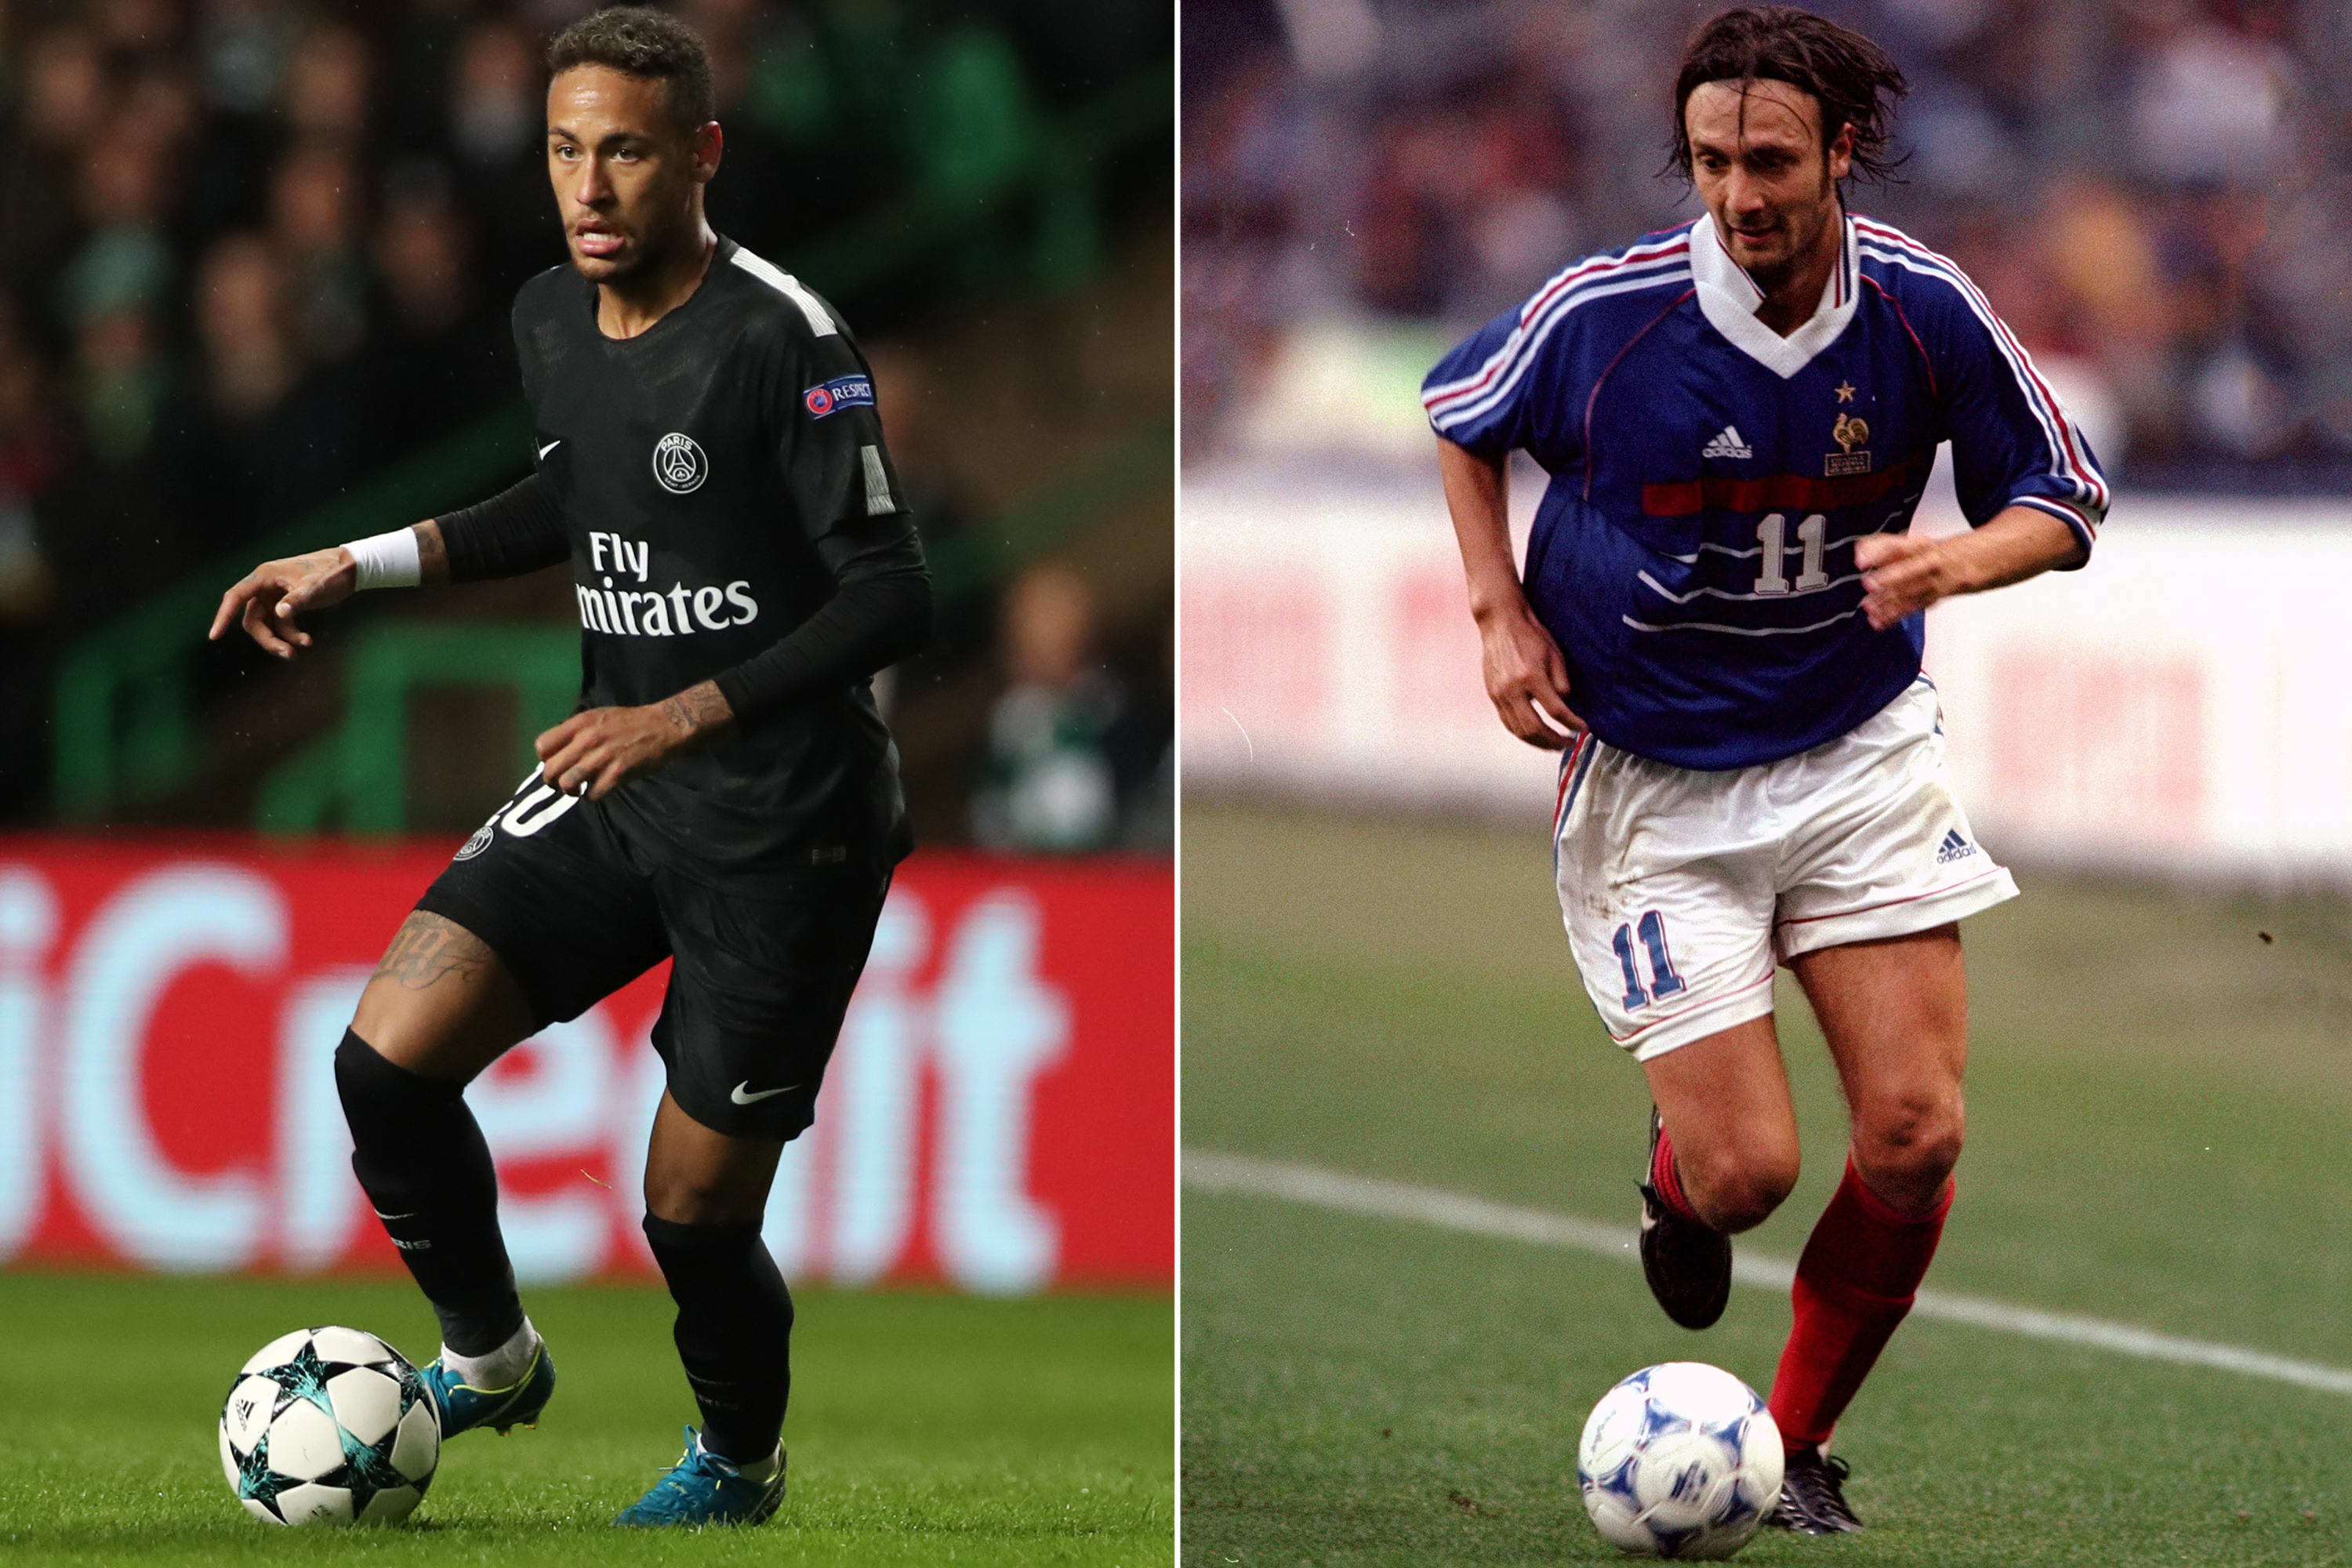 Campeão com a França em 98 critica Neymar no PSG: ‘Vendia já’